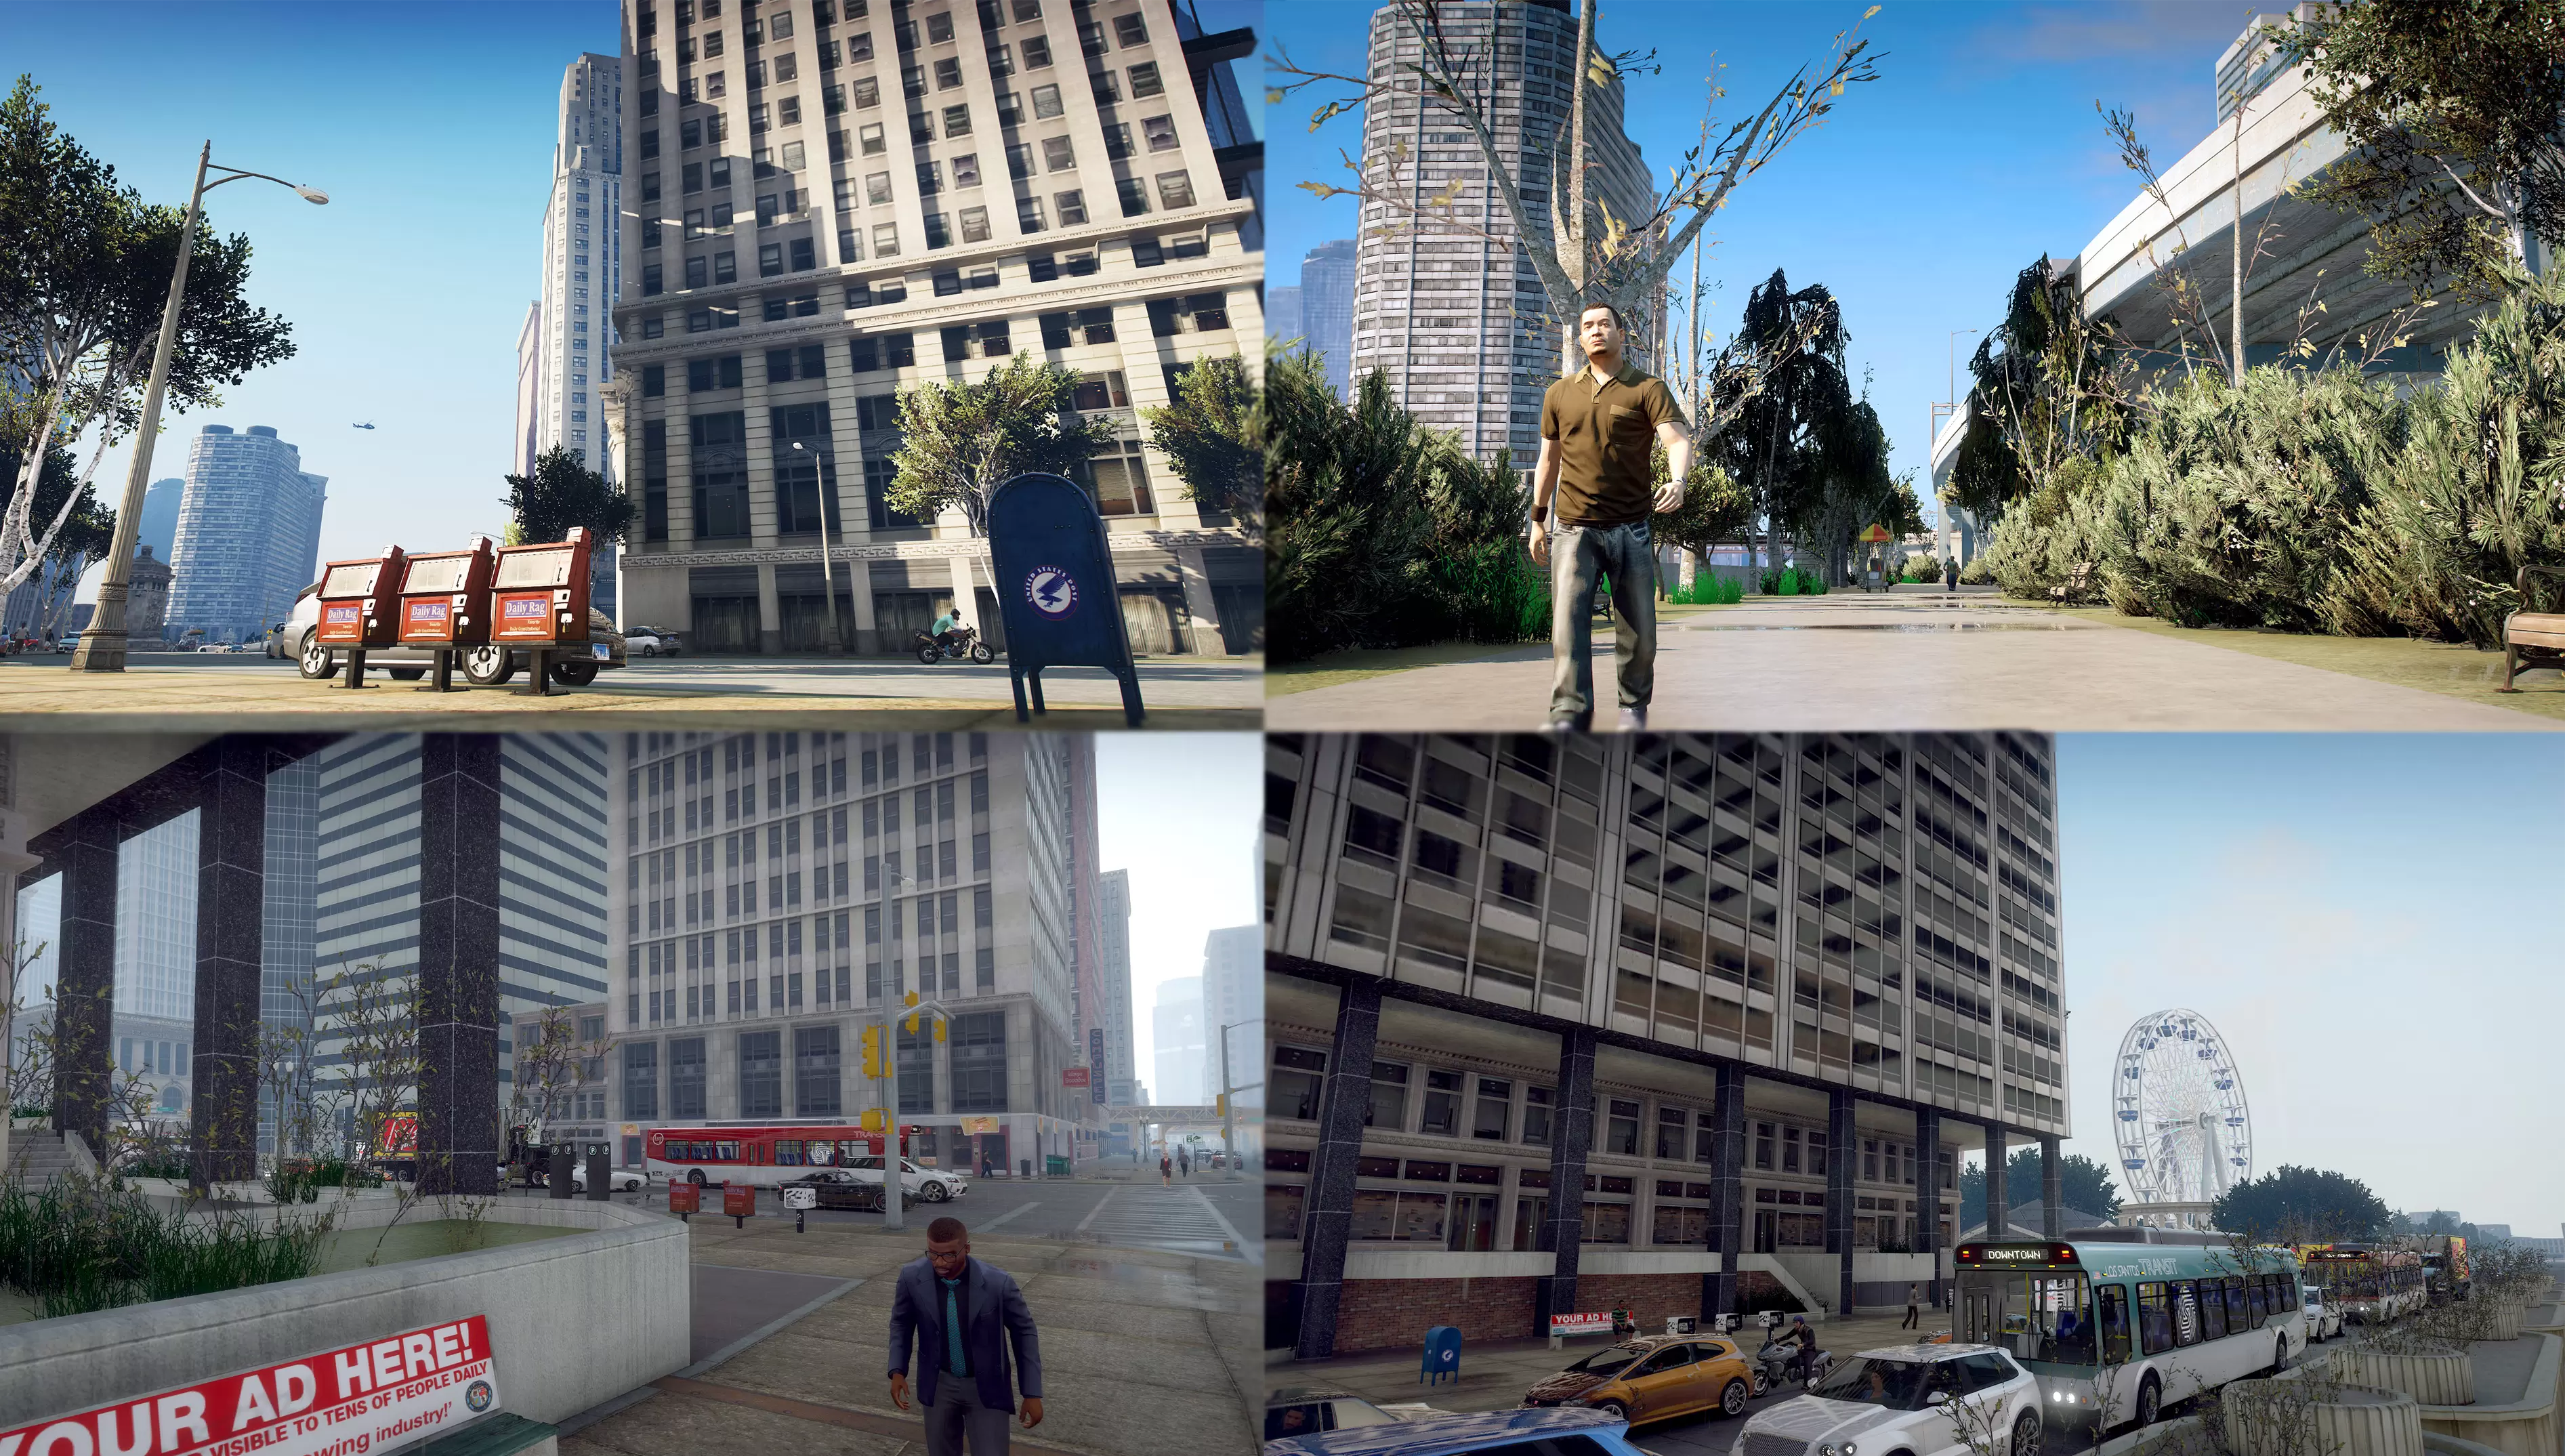 دانلود مود جدید Windy City برای GTA V نسخه V.1.4